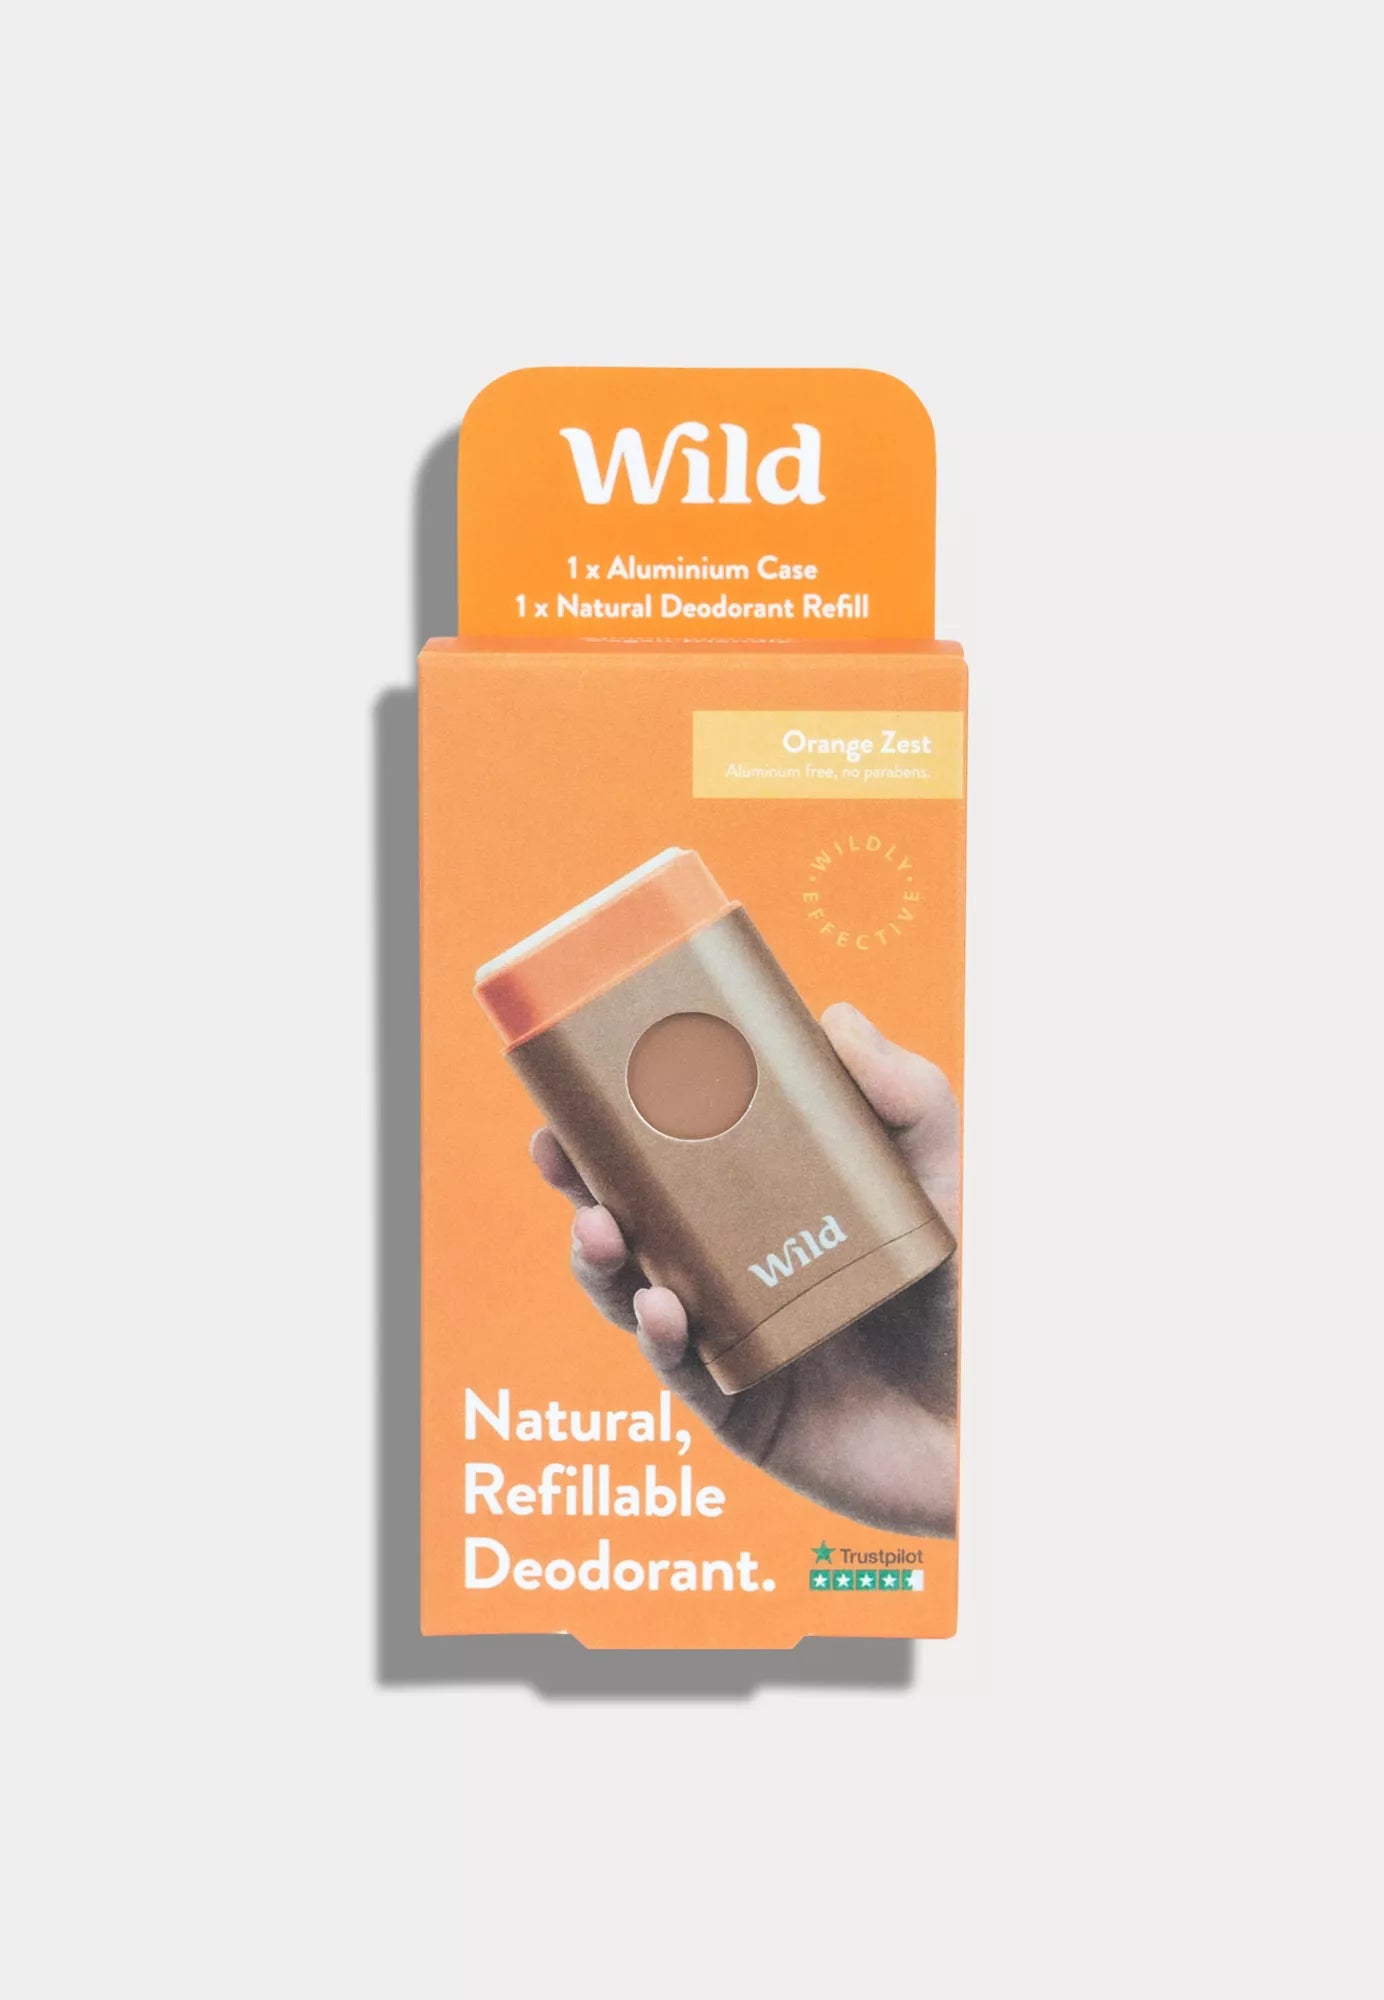 Wild Deo Orange Zest mit wiederverwendbarem Deo-Behälter, vegan, tierversuchsfrei